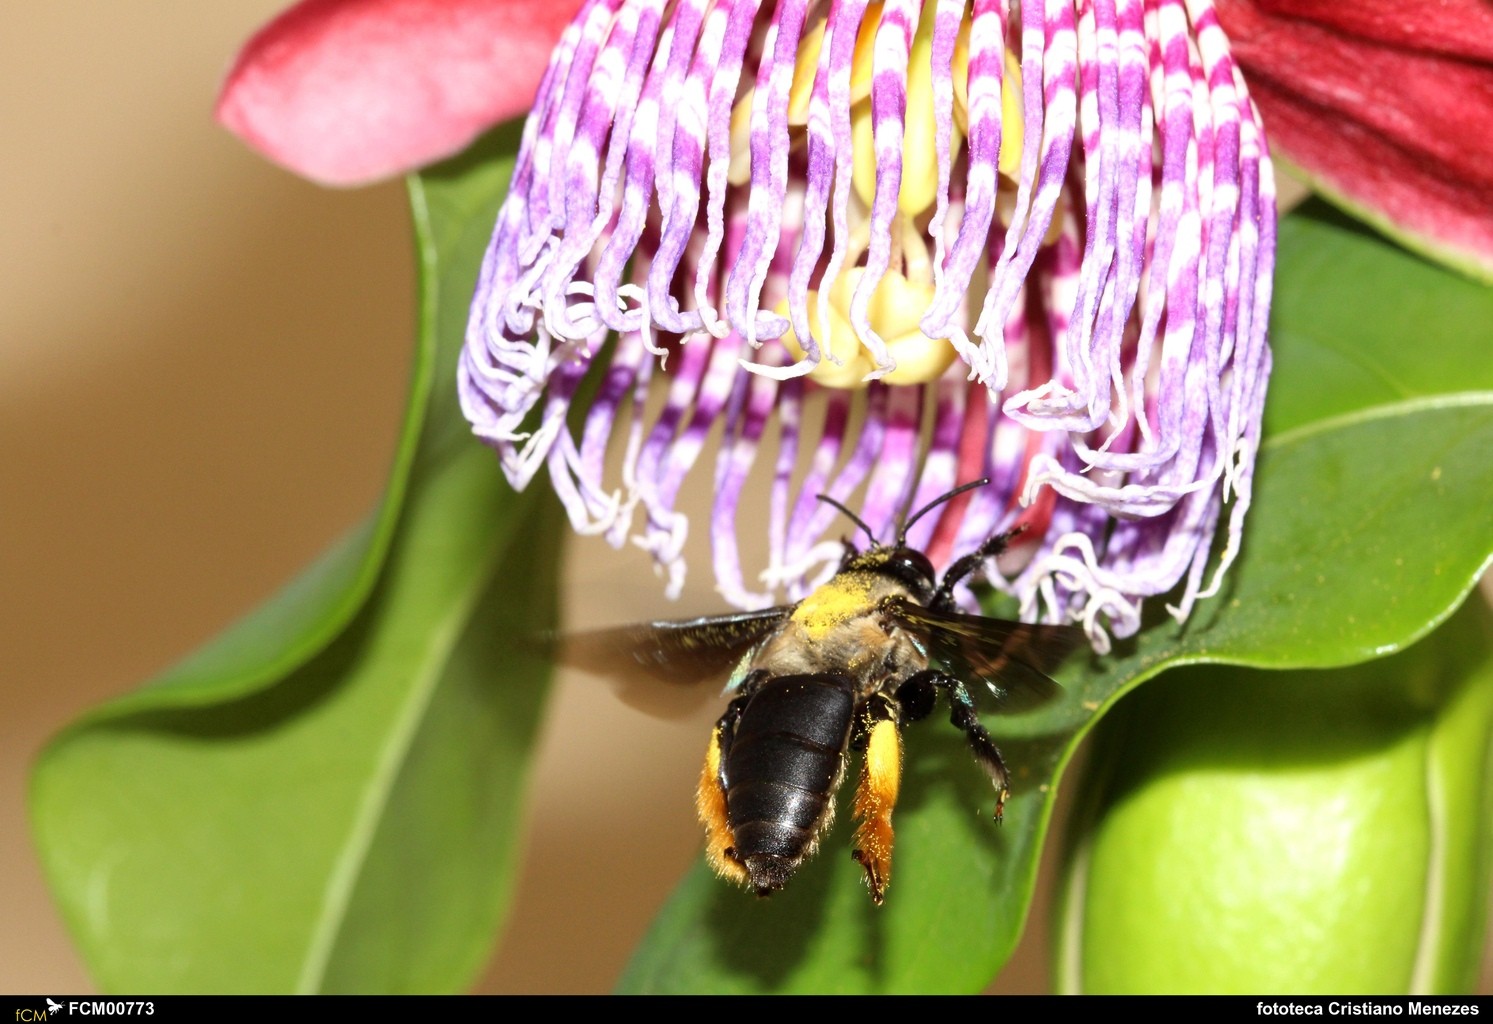 Polinizadoras ‘profissionais’: entenda por que as abelhas impactam na produção agrícola e a importância de preservá-las